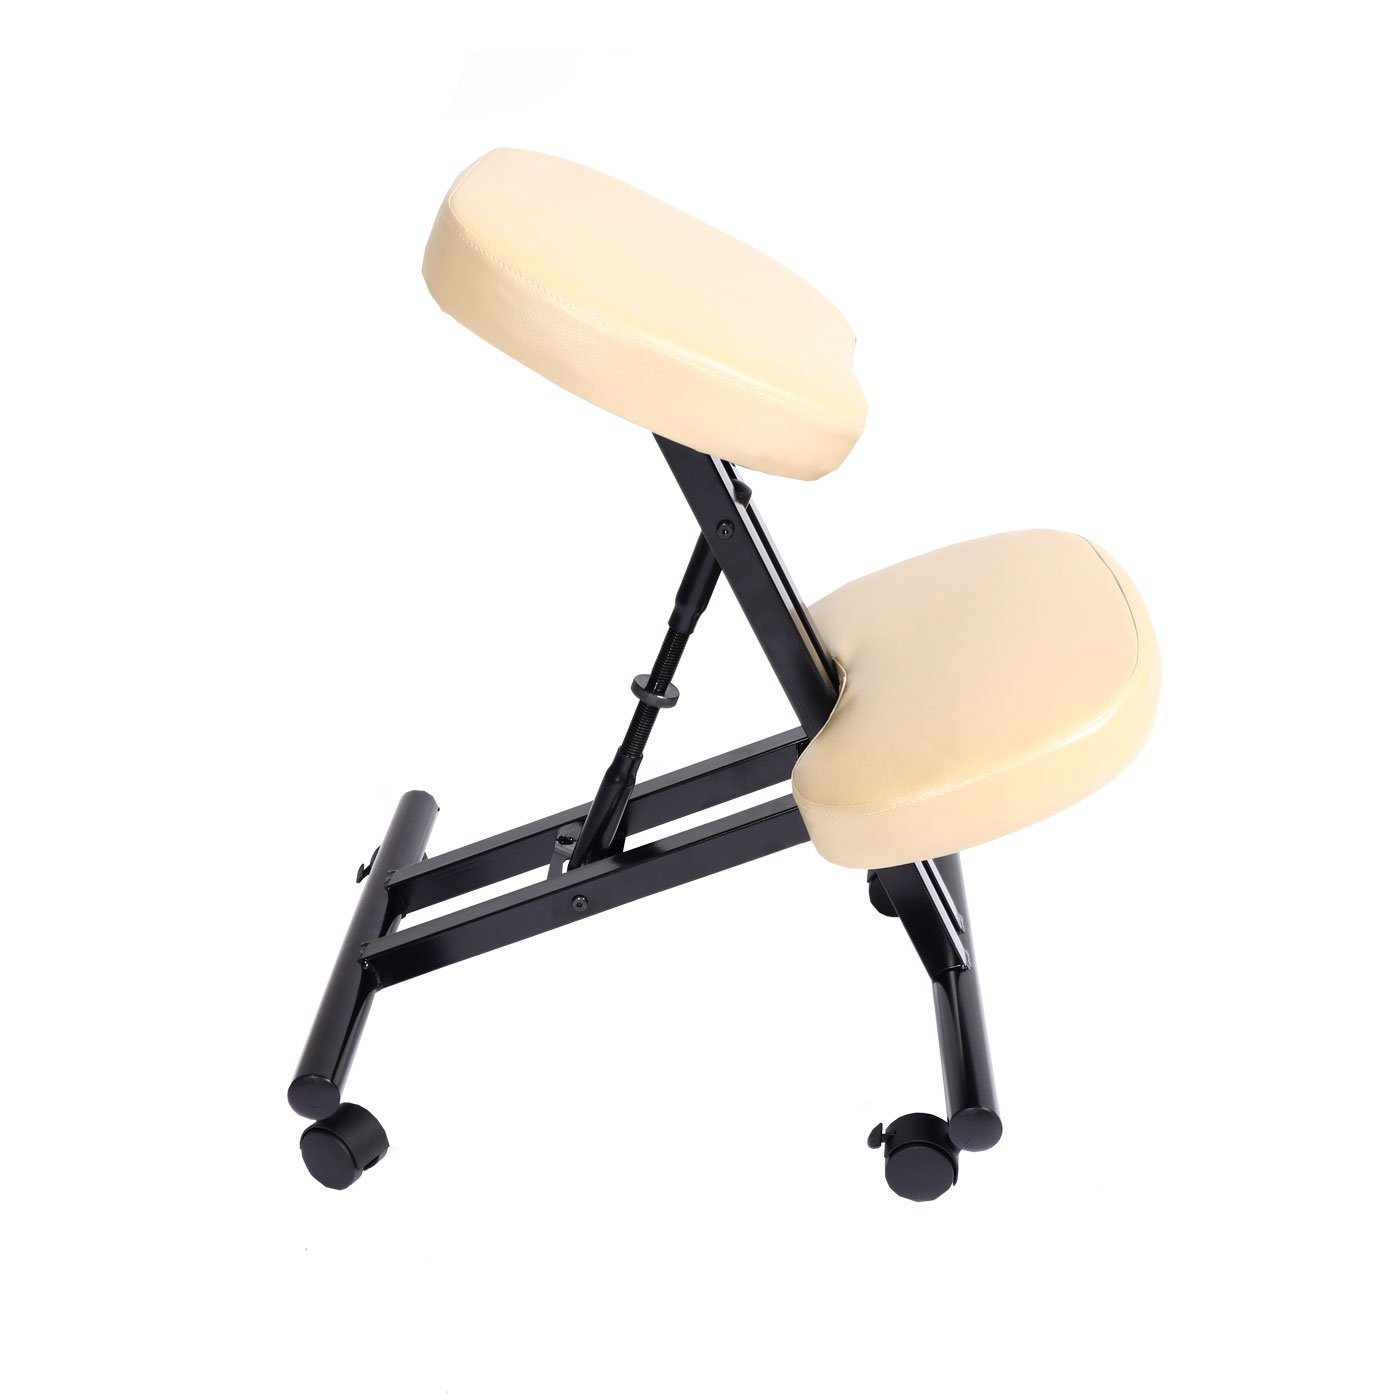 und Schreibtischstuhl Sitzfläche Höhenverstellbare creme-beige Weich MCW-E10, MCW gepolsterte Sitzfläche, Knie-